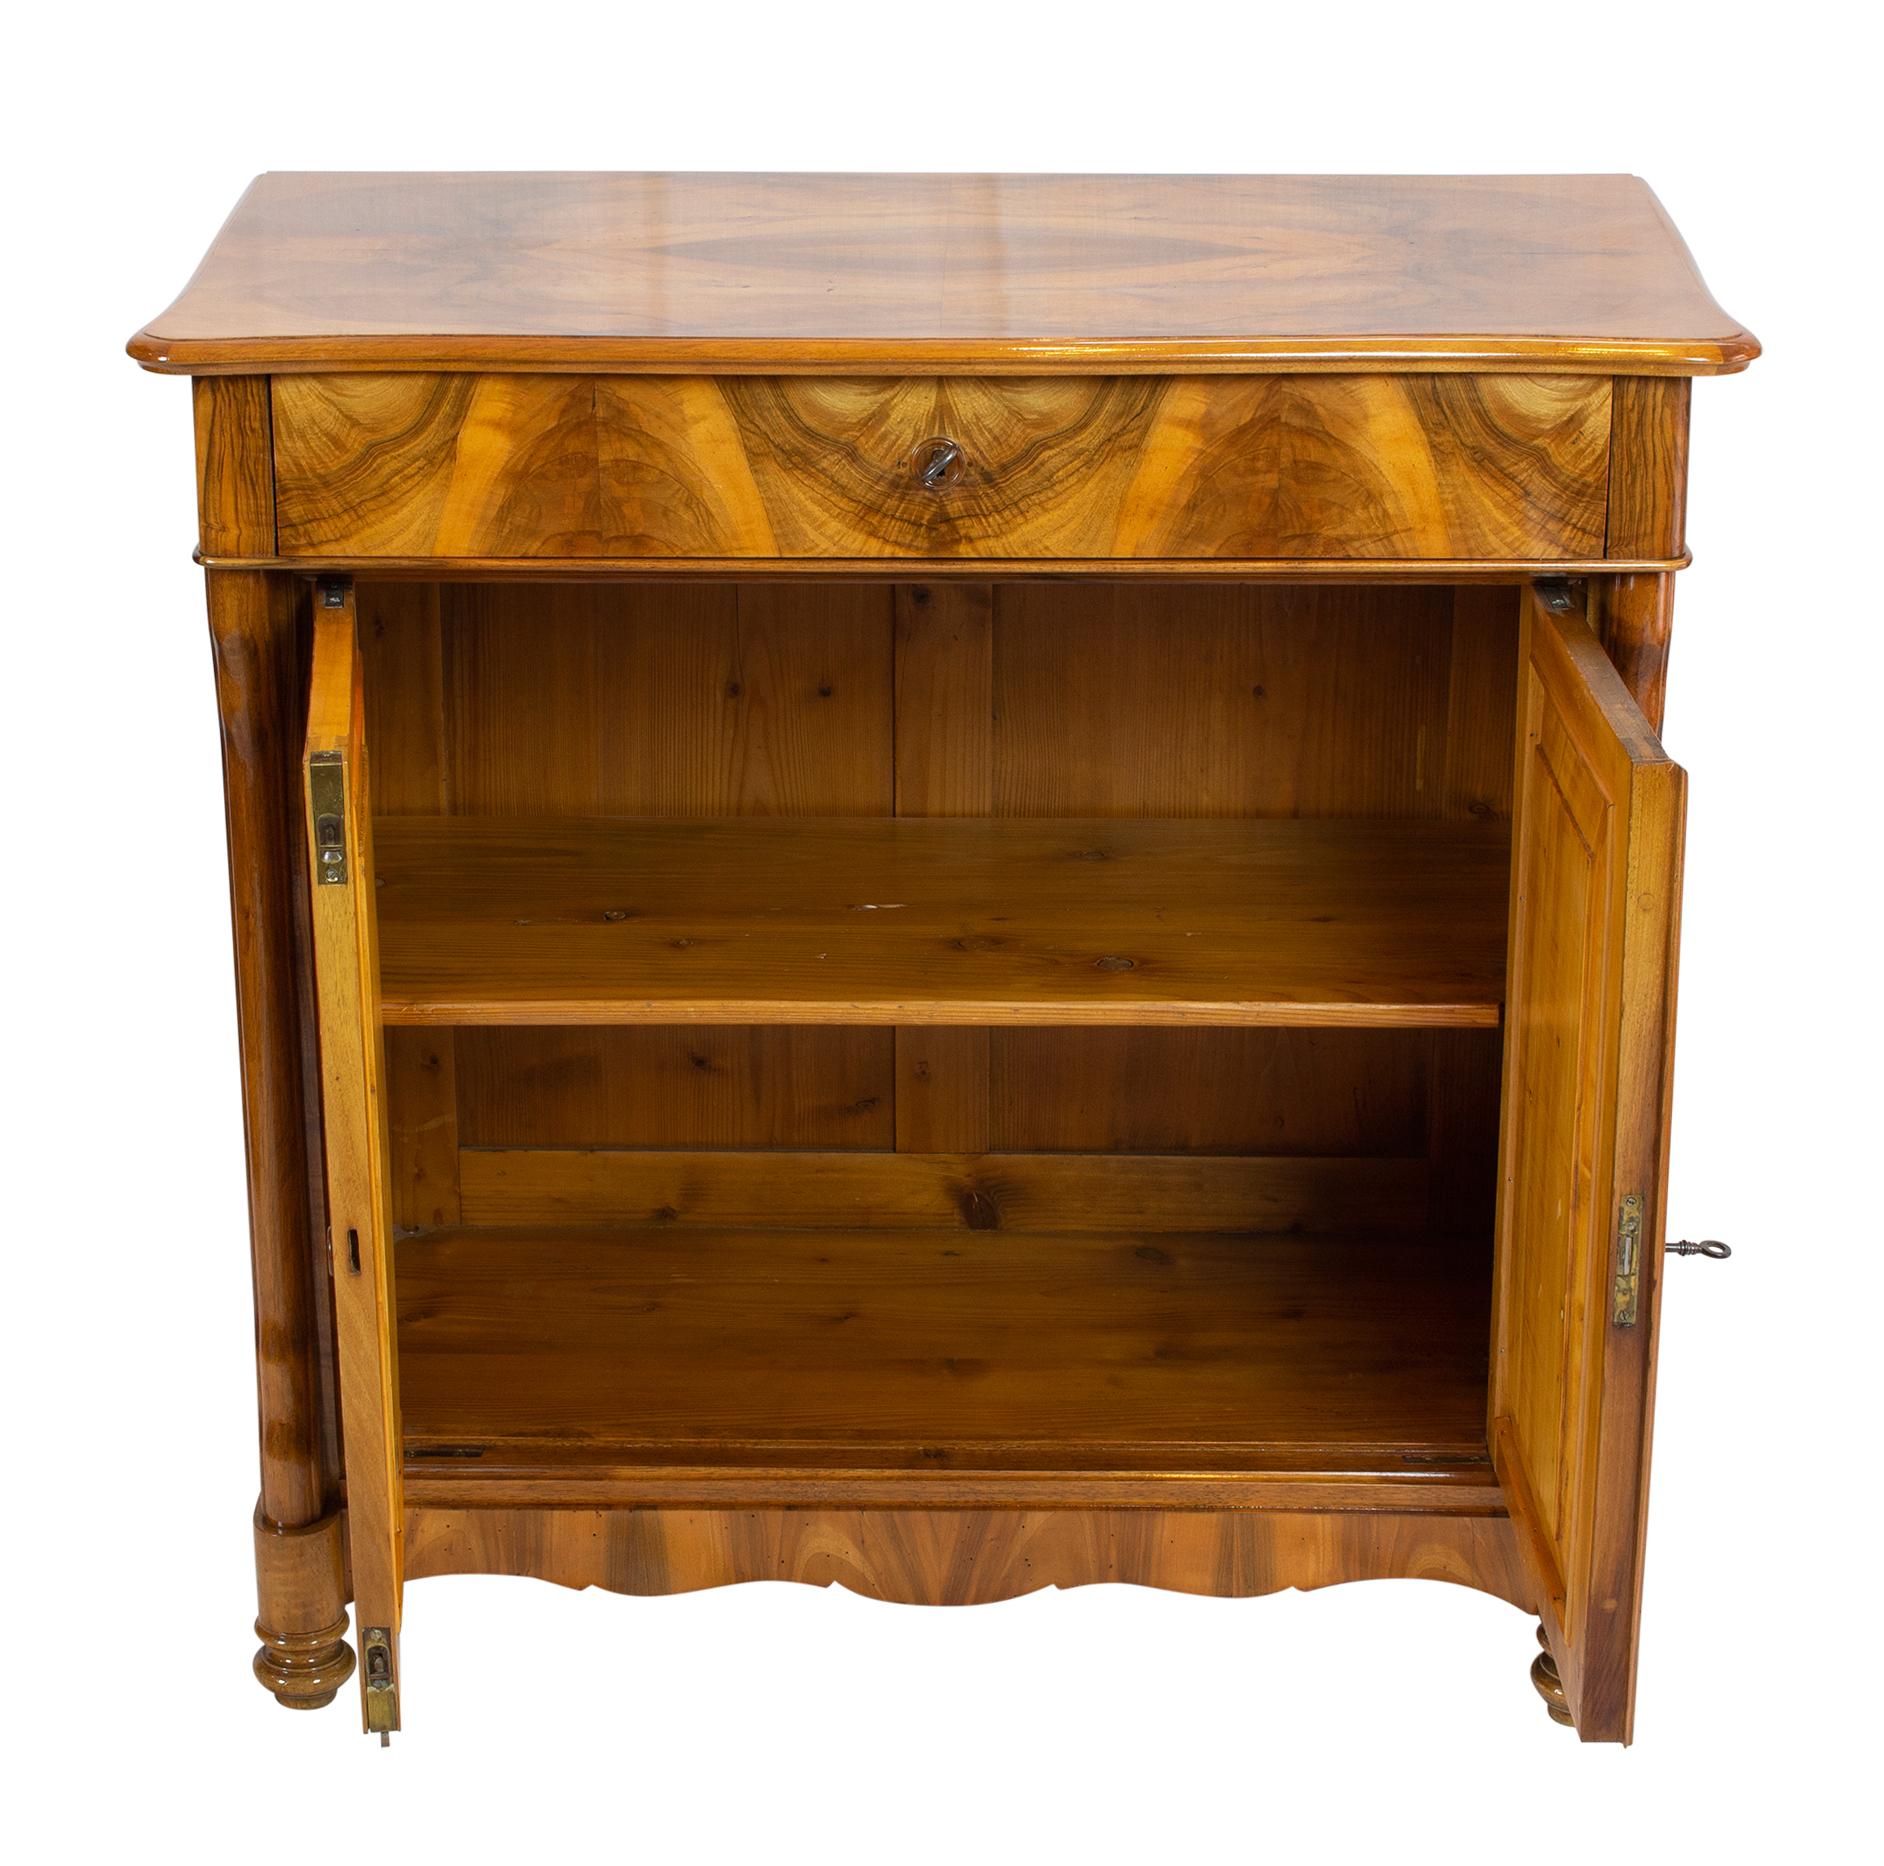 Schöner Biedermeier Halbschrank aus der Zeit des späten Biedermeier / Louis Philippe, um 1845. Die Möbel sind mit schönem Nussbaumfurnier auf einem Fichtenkorpus überzogen.
Oben befindet sich eine Schublade, darunter sind zwei Türen. Äußerst